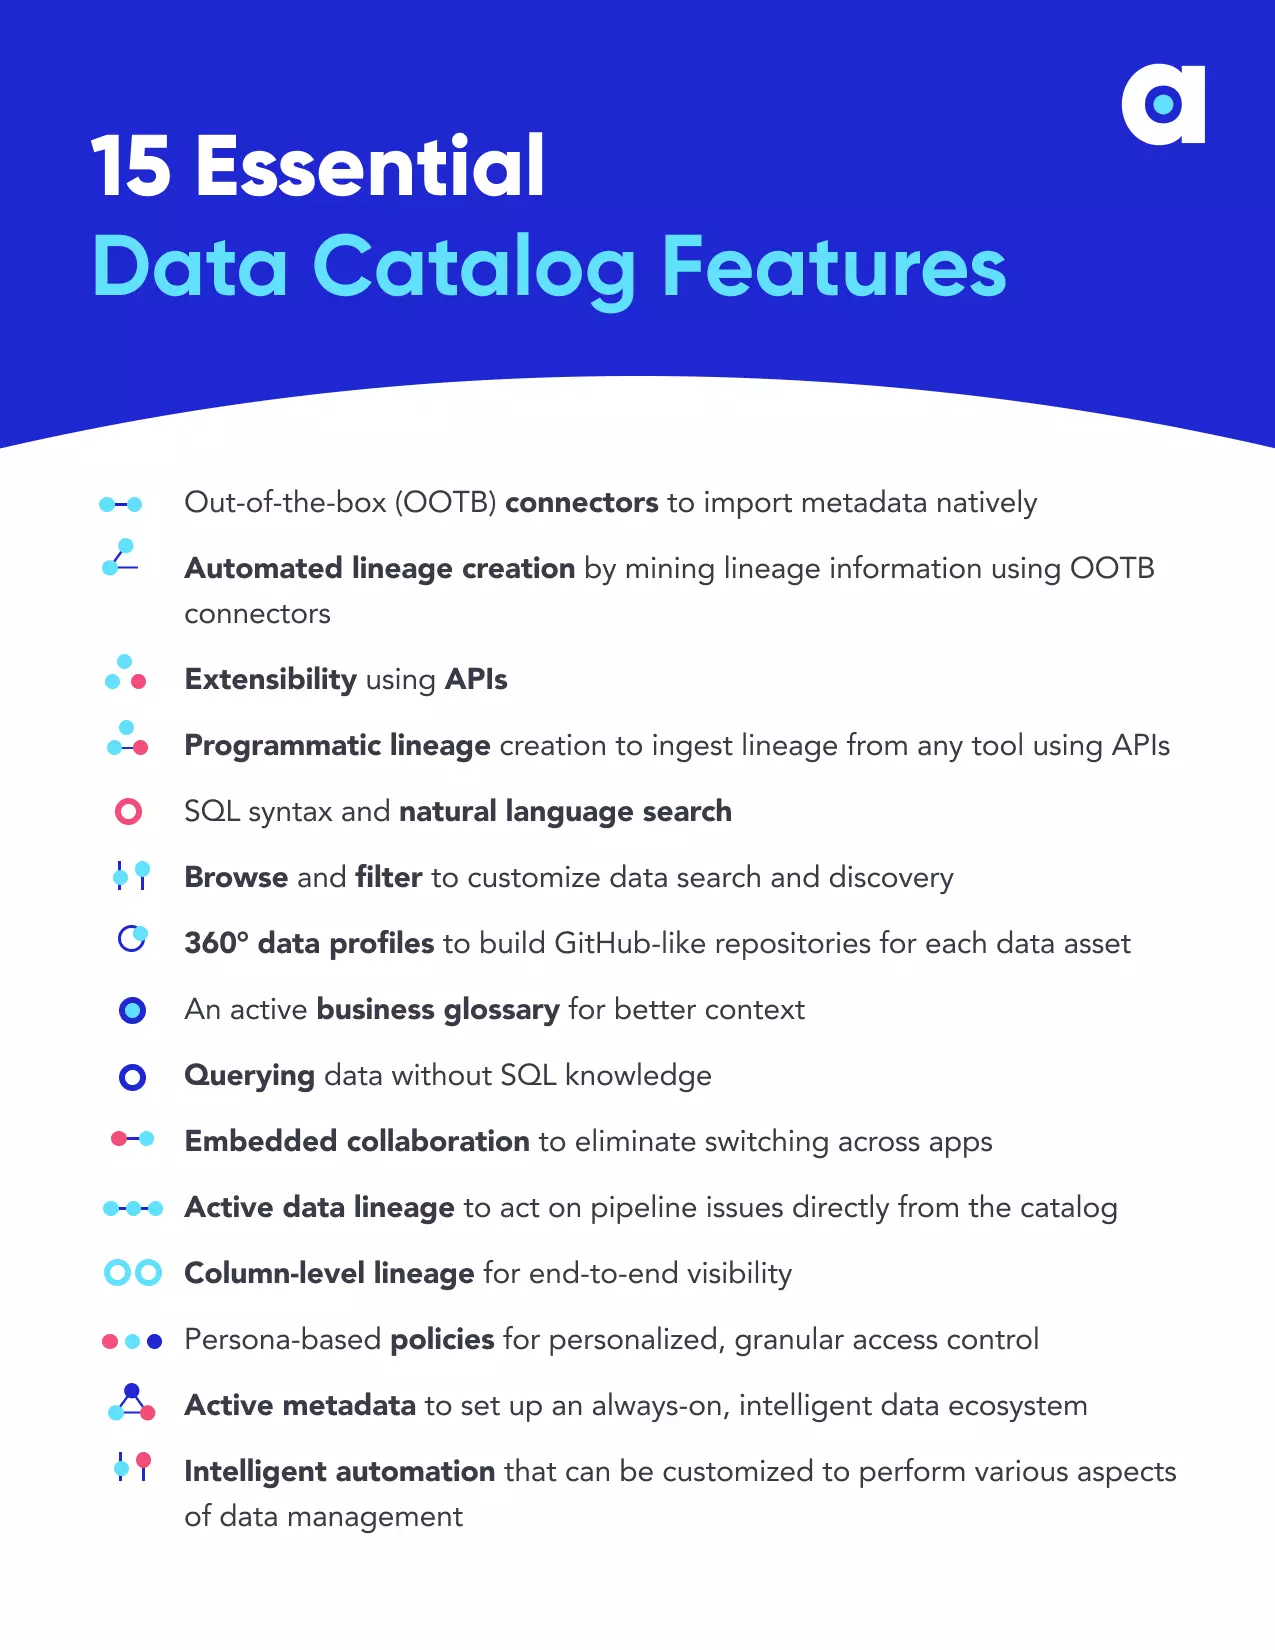 Essential data catalog features